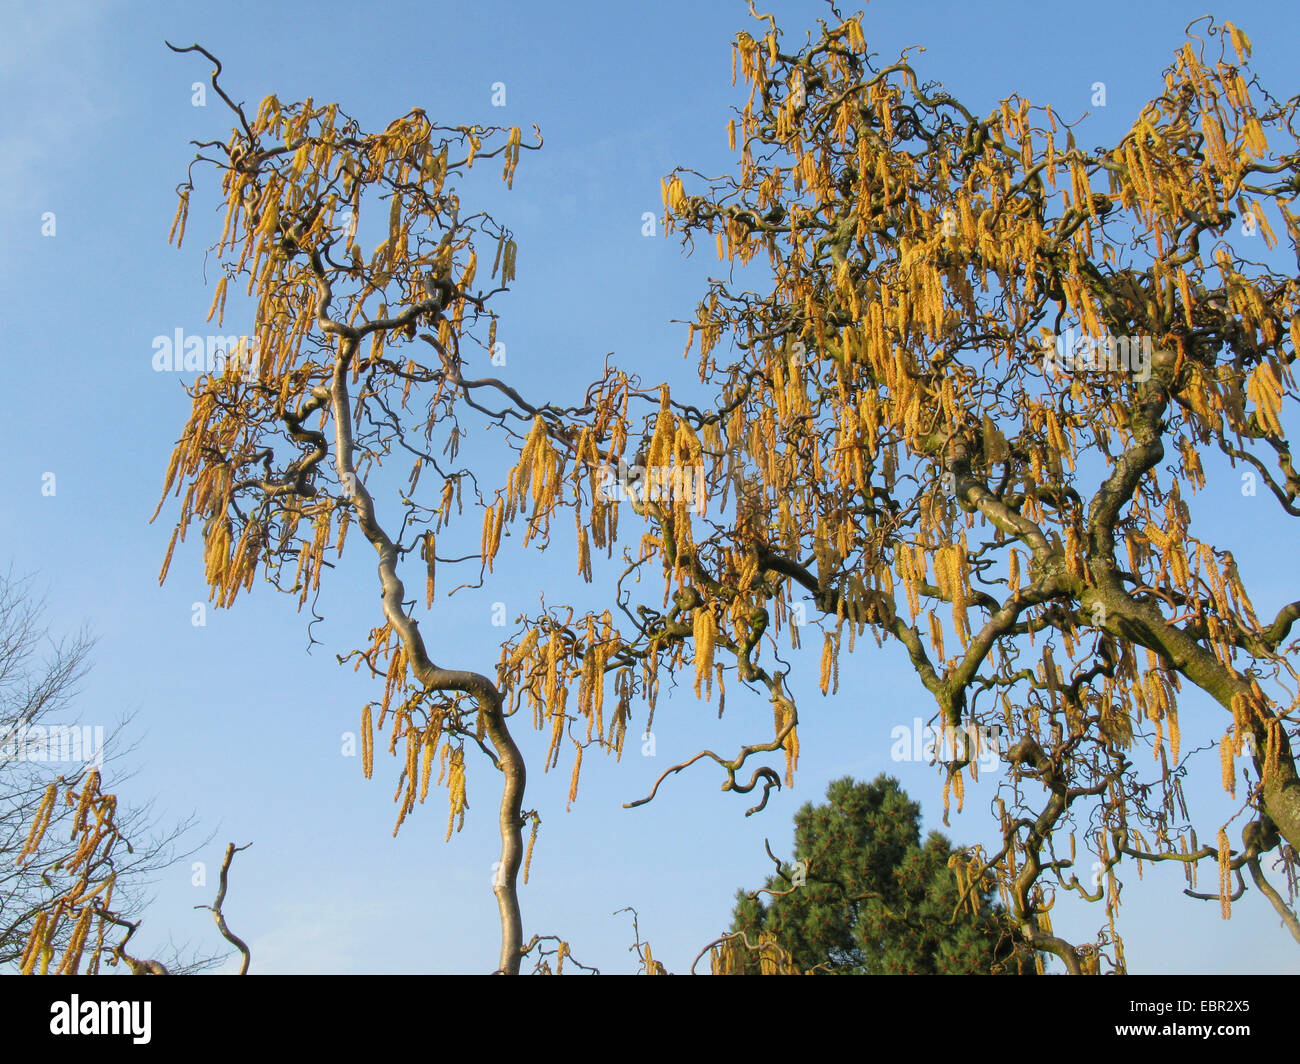 Corkscrew Hazel , Politique (Corylus avellana 'Contorta', Corylus avellana contorta), branches en fleurs, Allemagne Banque D'Images